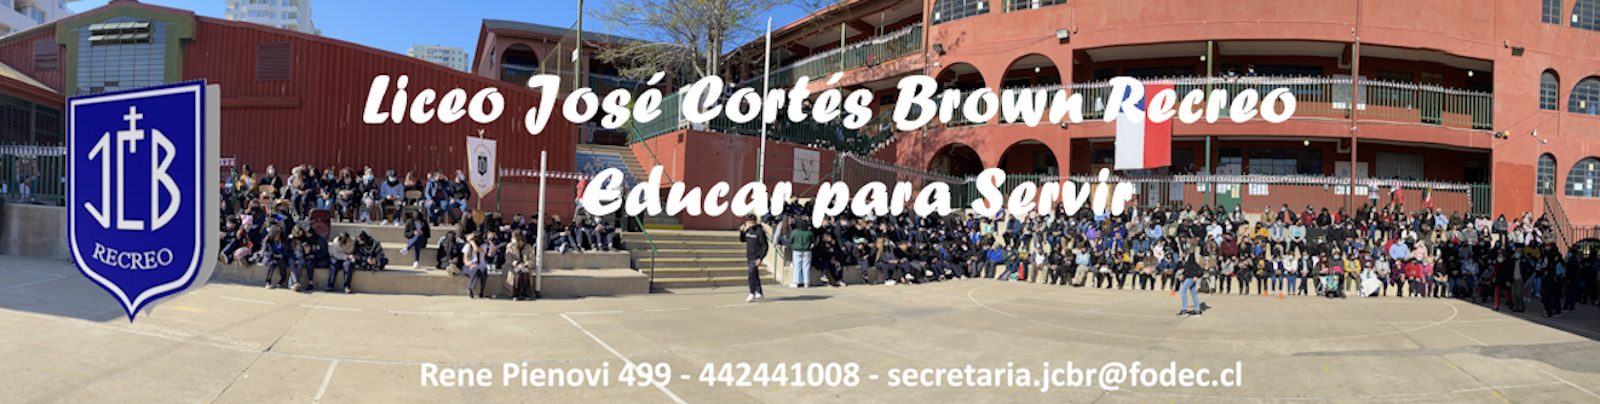 Liceo José Cortés Brown Recreo